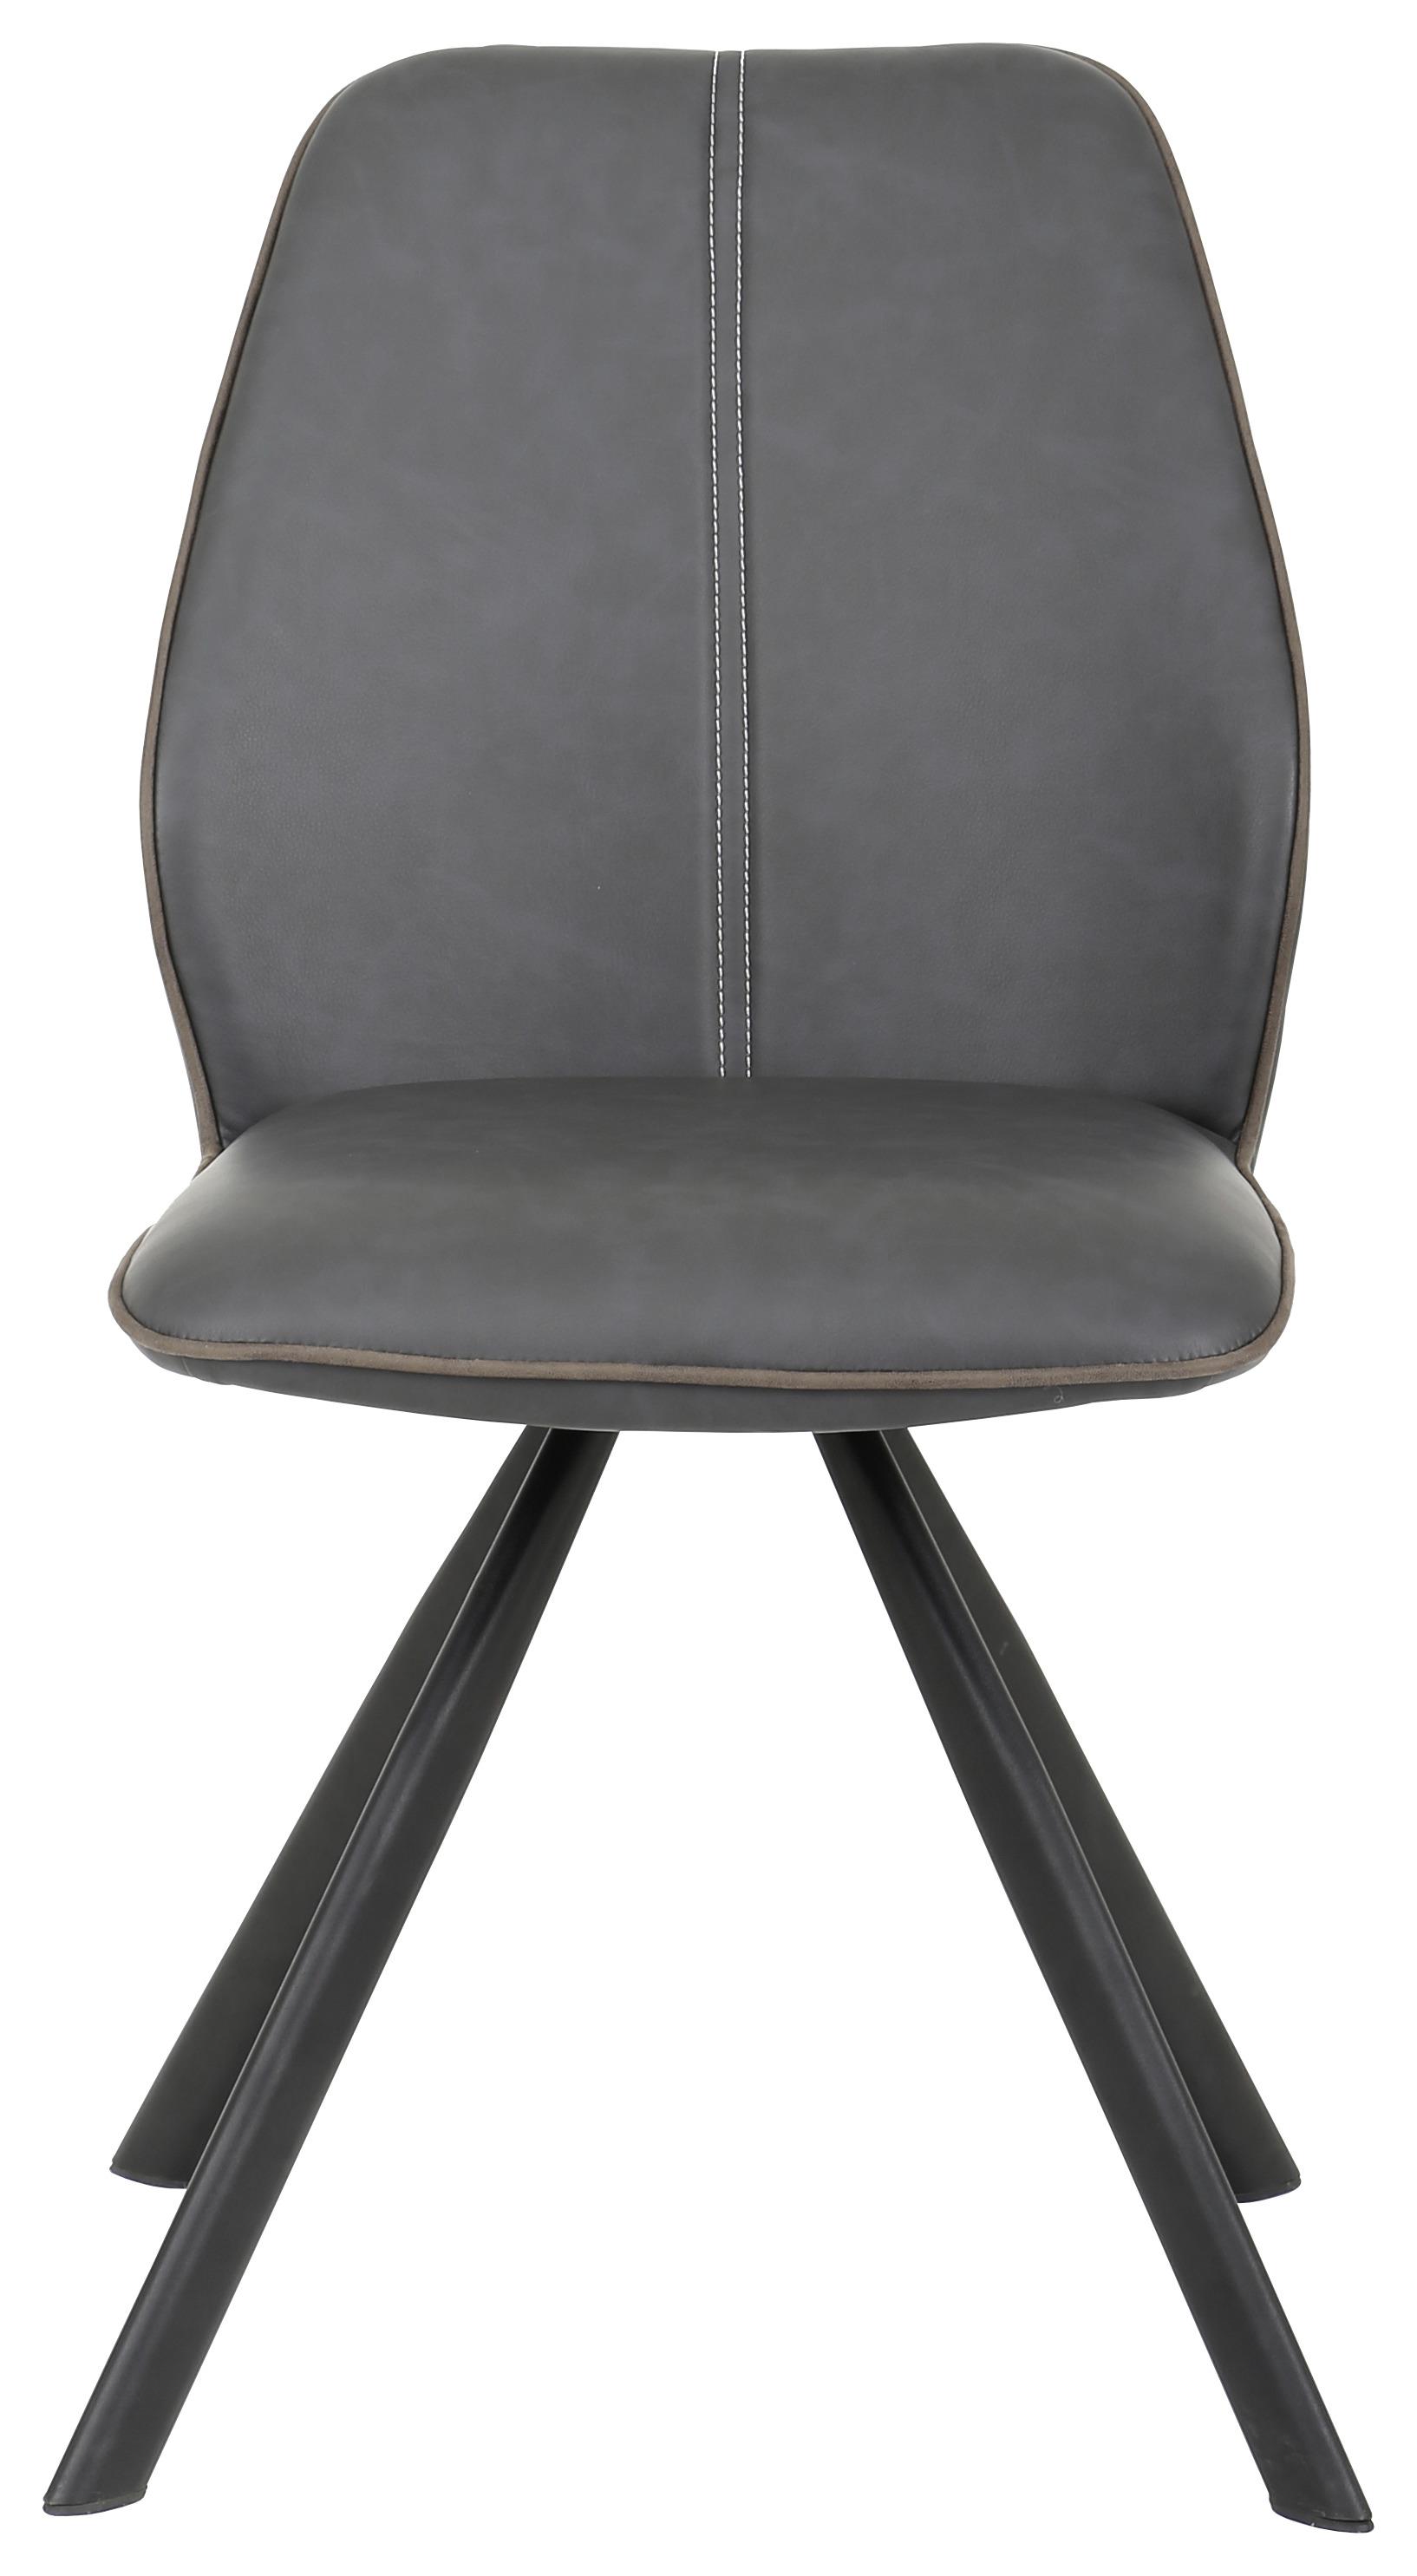 Stuhl in Schwarz - Schwarz/Braun, Modern, Textil/Metall (44/88/62cm) - Modern Living